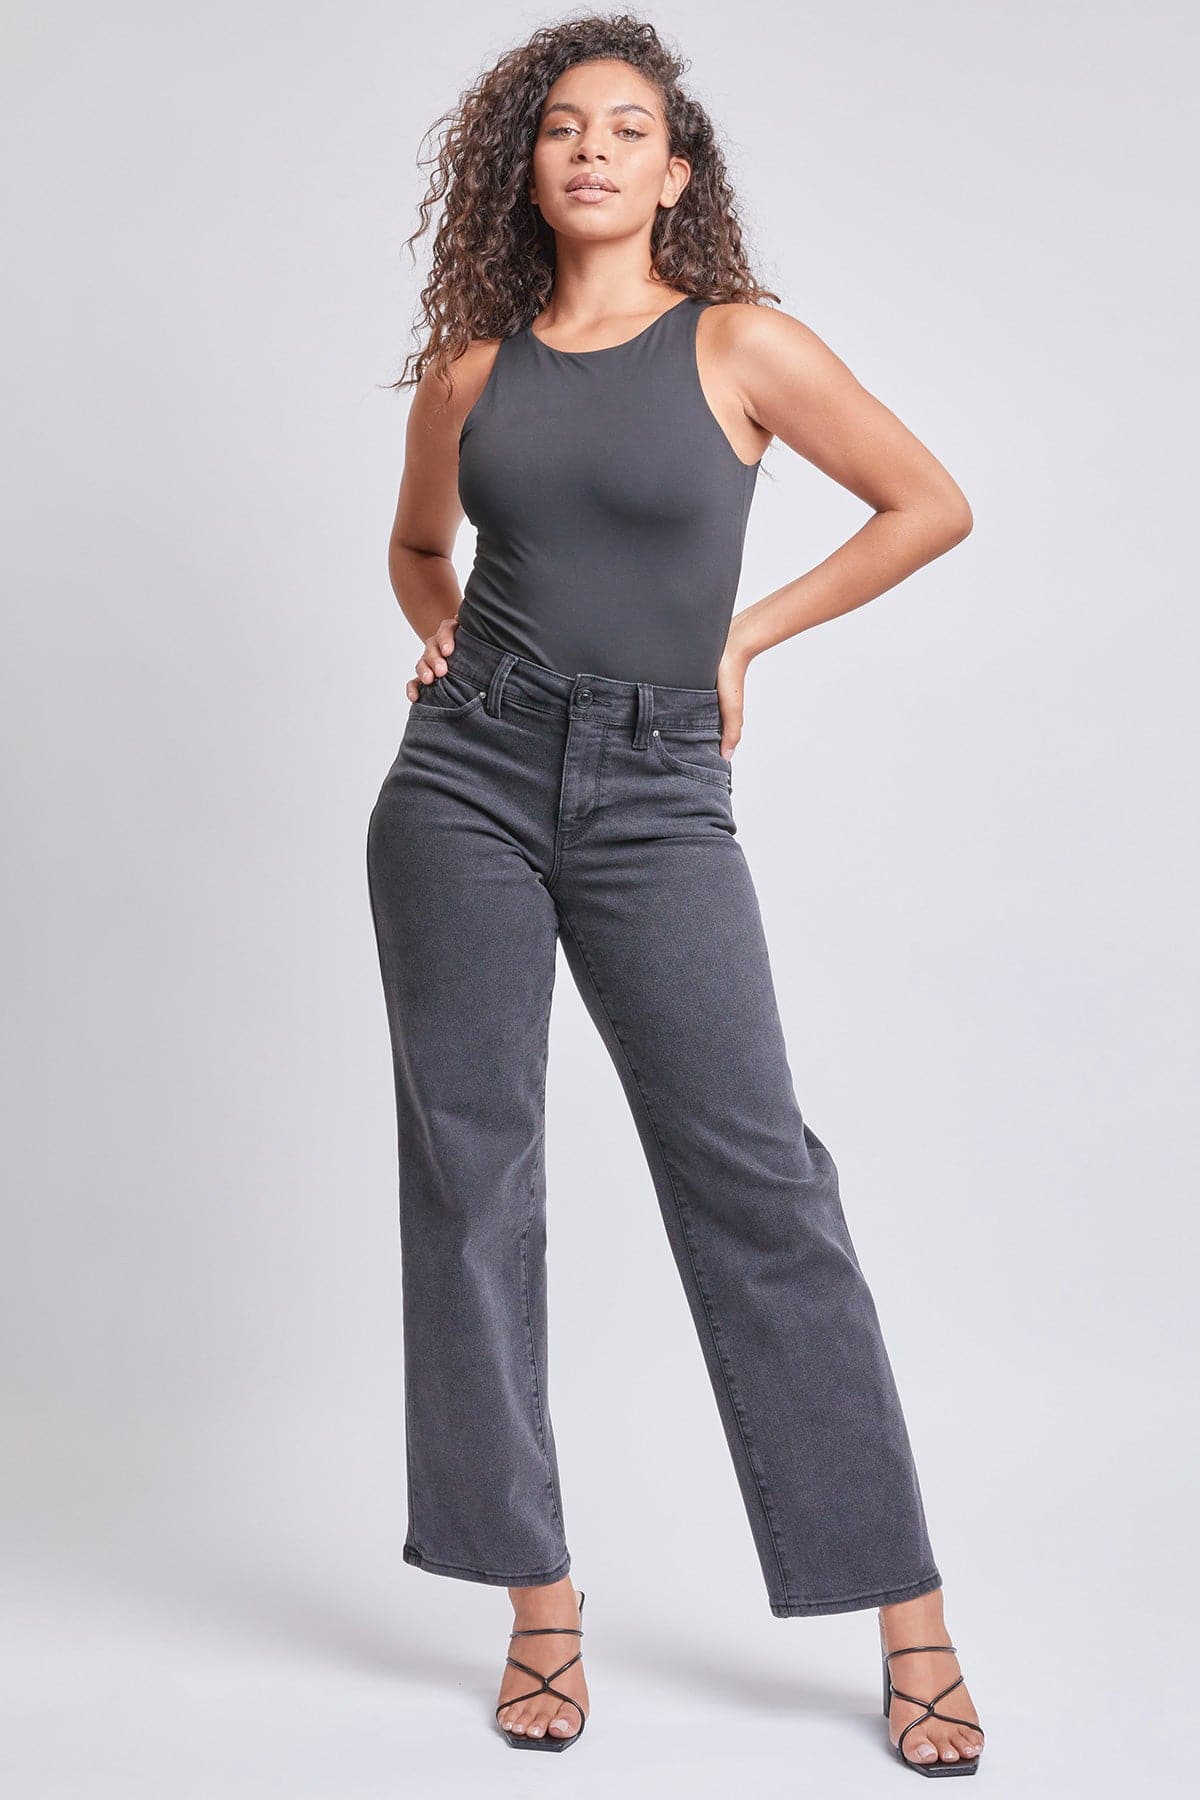 Women’s Sustainable WannaBettaButt Straight Jeans